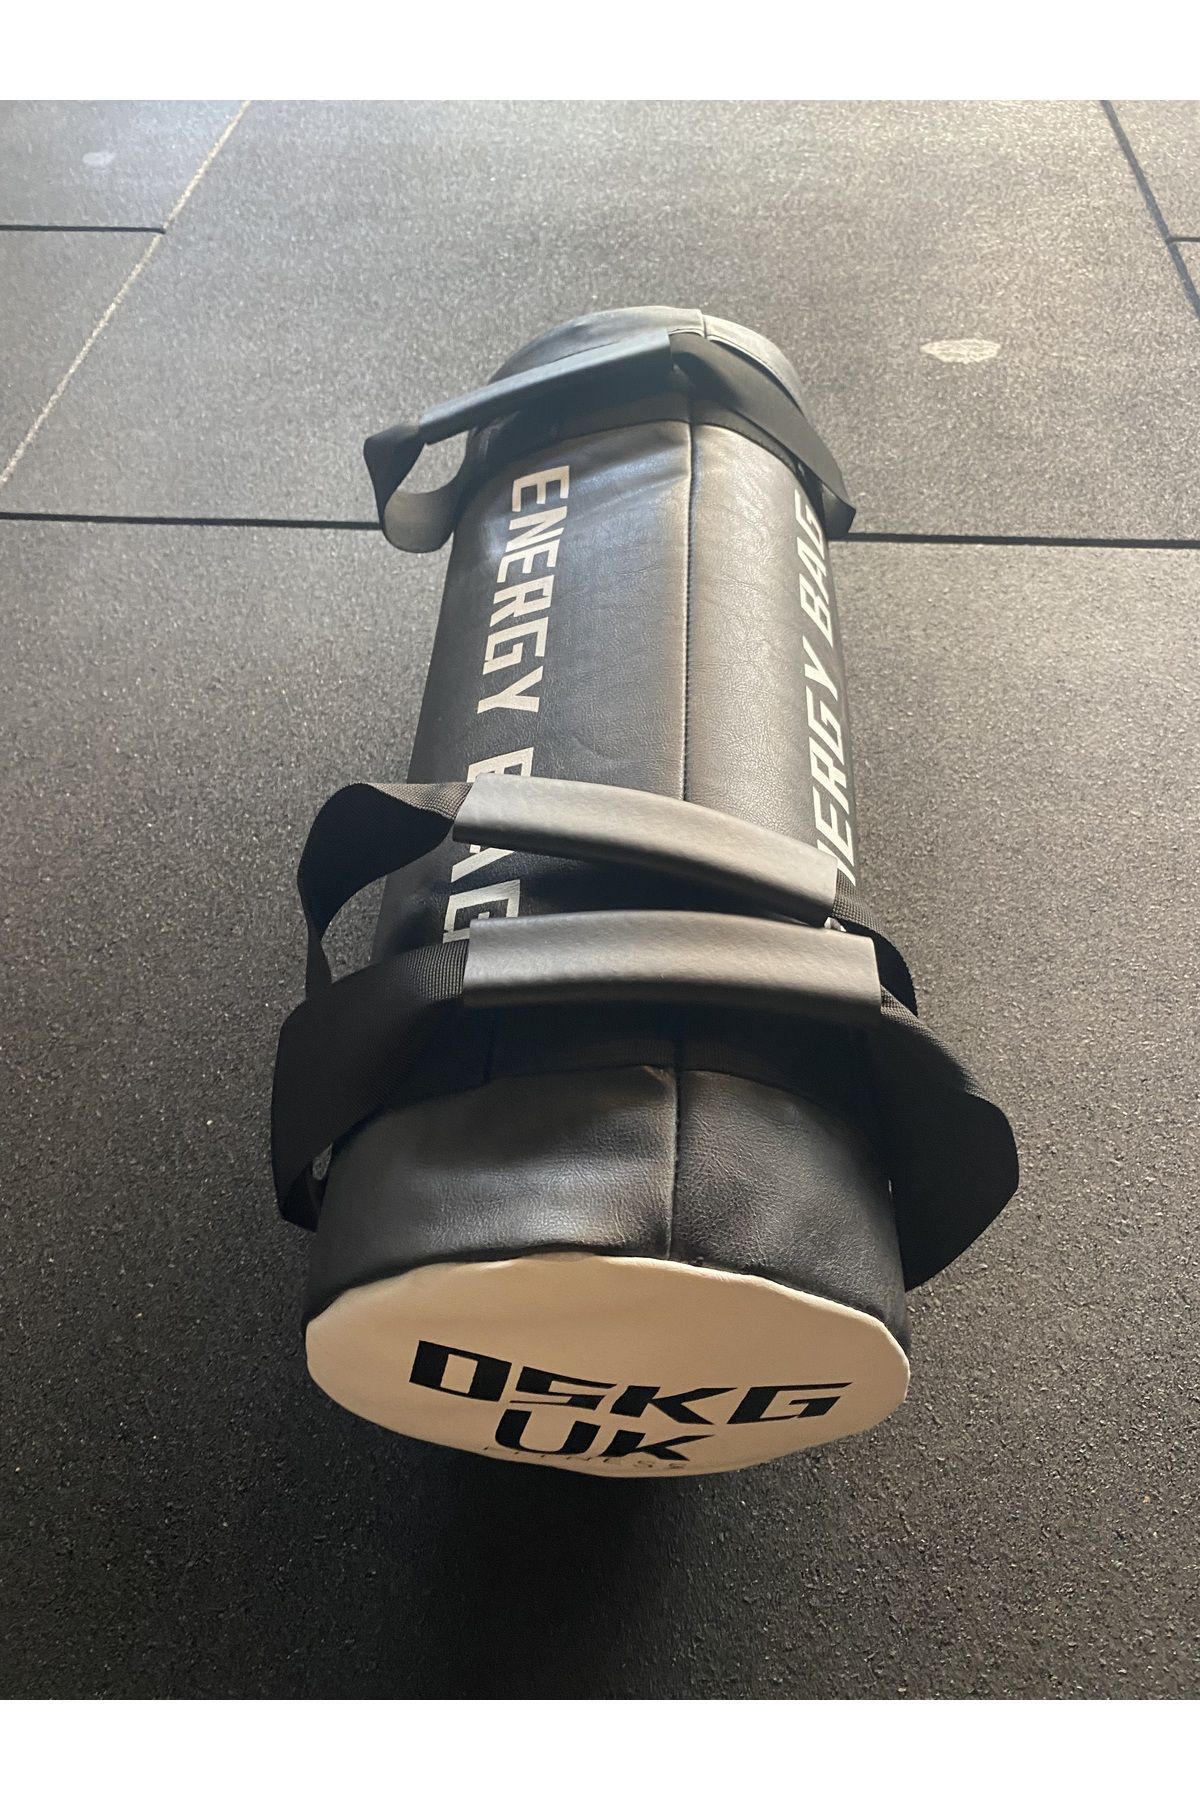 UK FİTNESS 5 kg Power Bag Ağırlık Çantası Pro.